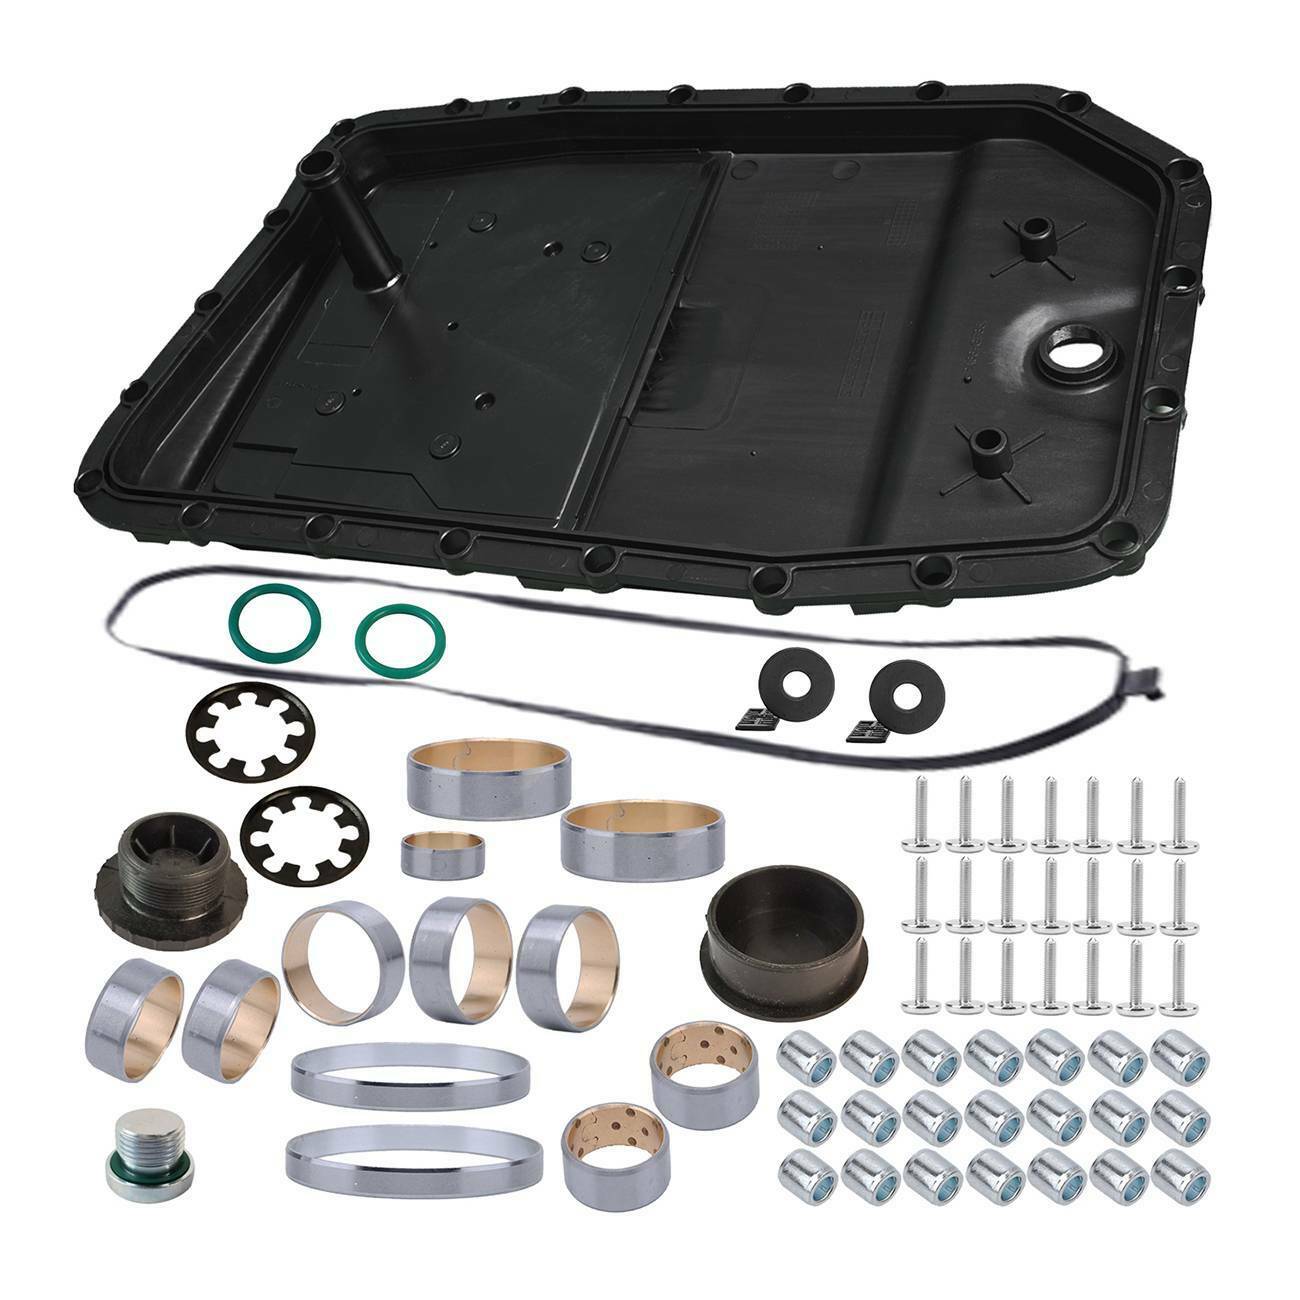 Transmission Oil Pan Filter + Repair Kit + Drain Plug for BMW E83 E85 E90 German Made